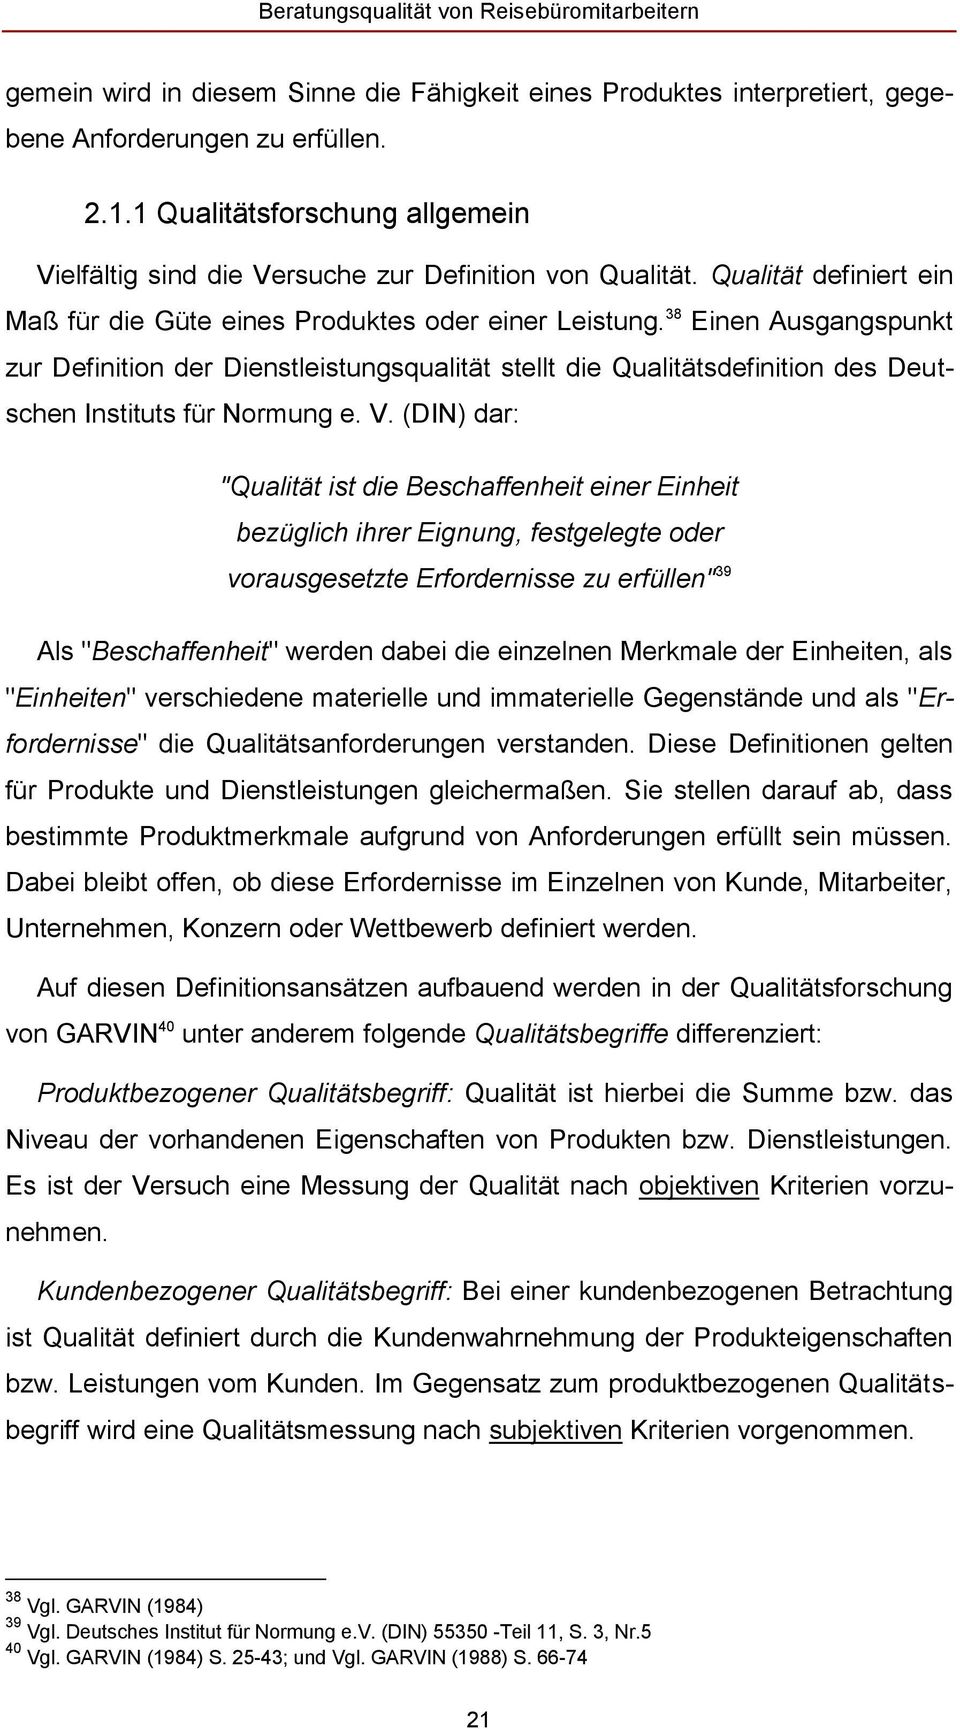 38 Einen Ausgangspunkt zur Definition der Dienstleistungsqualität stellt die Qualitätsdefinition des Deutschen Instituts für Normung e. V.